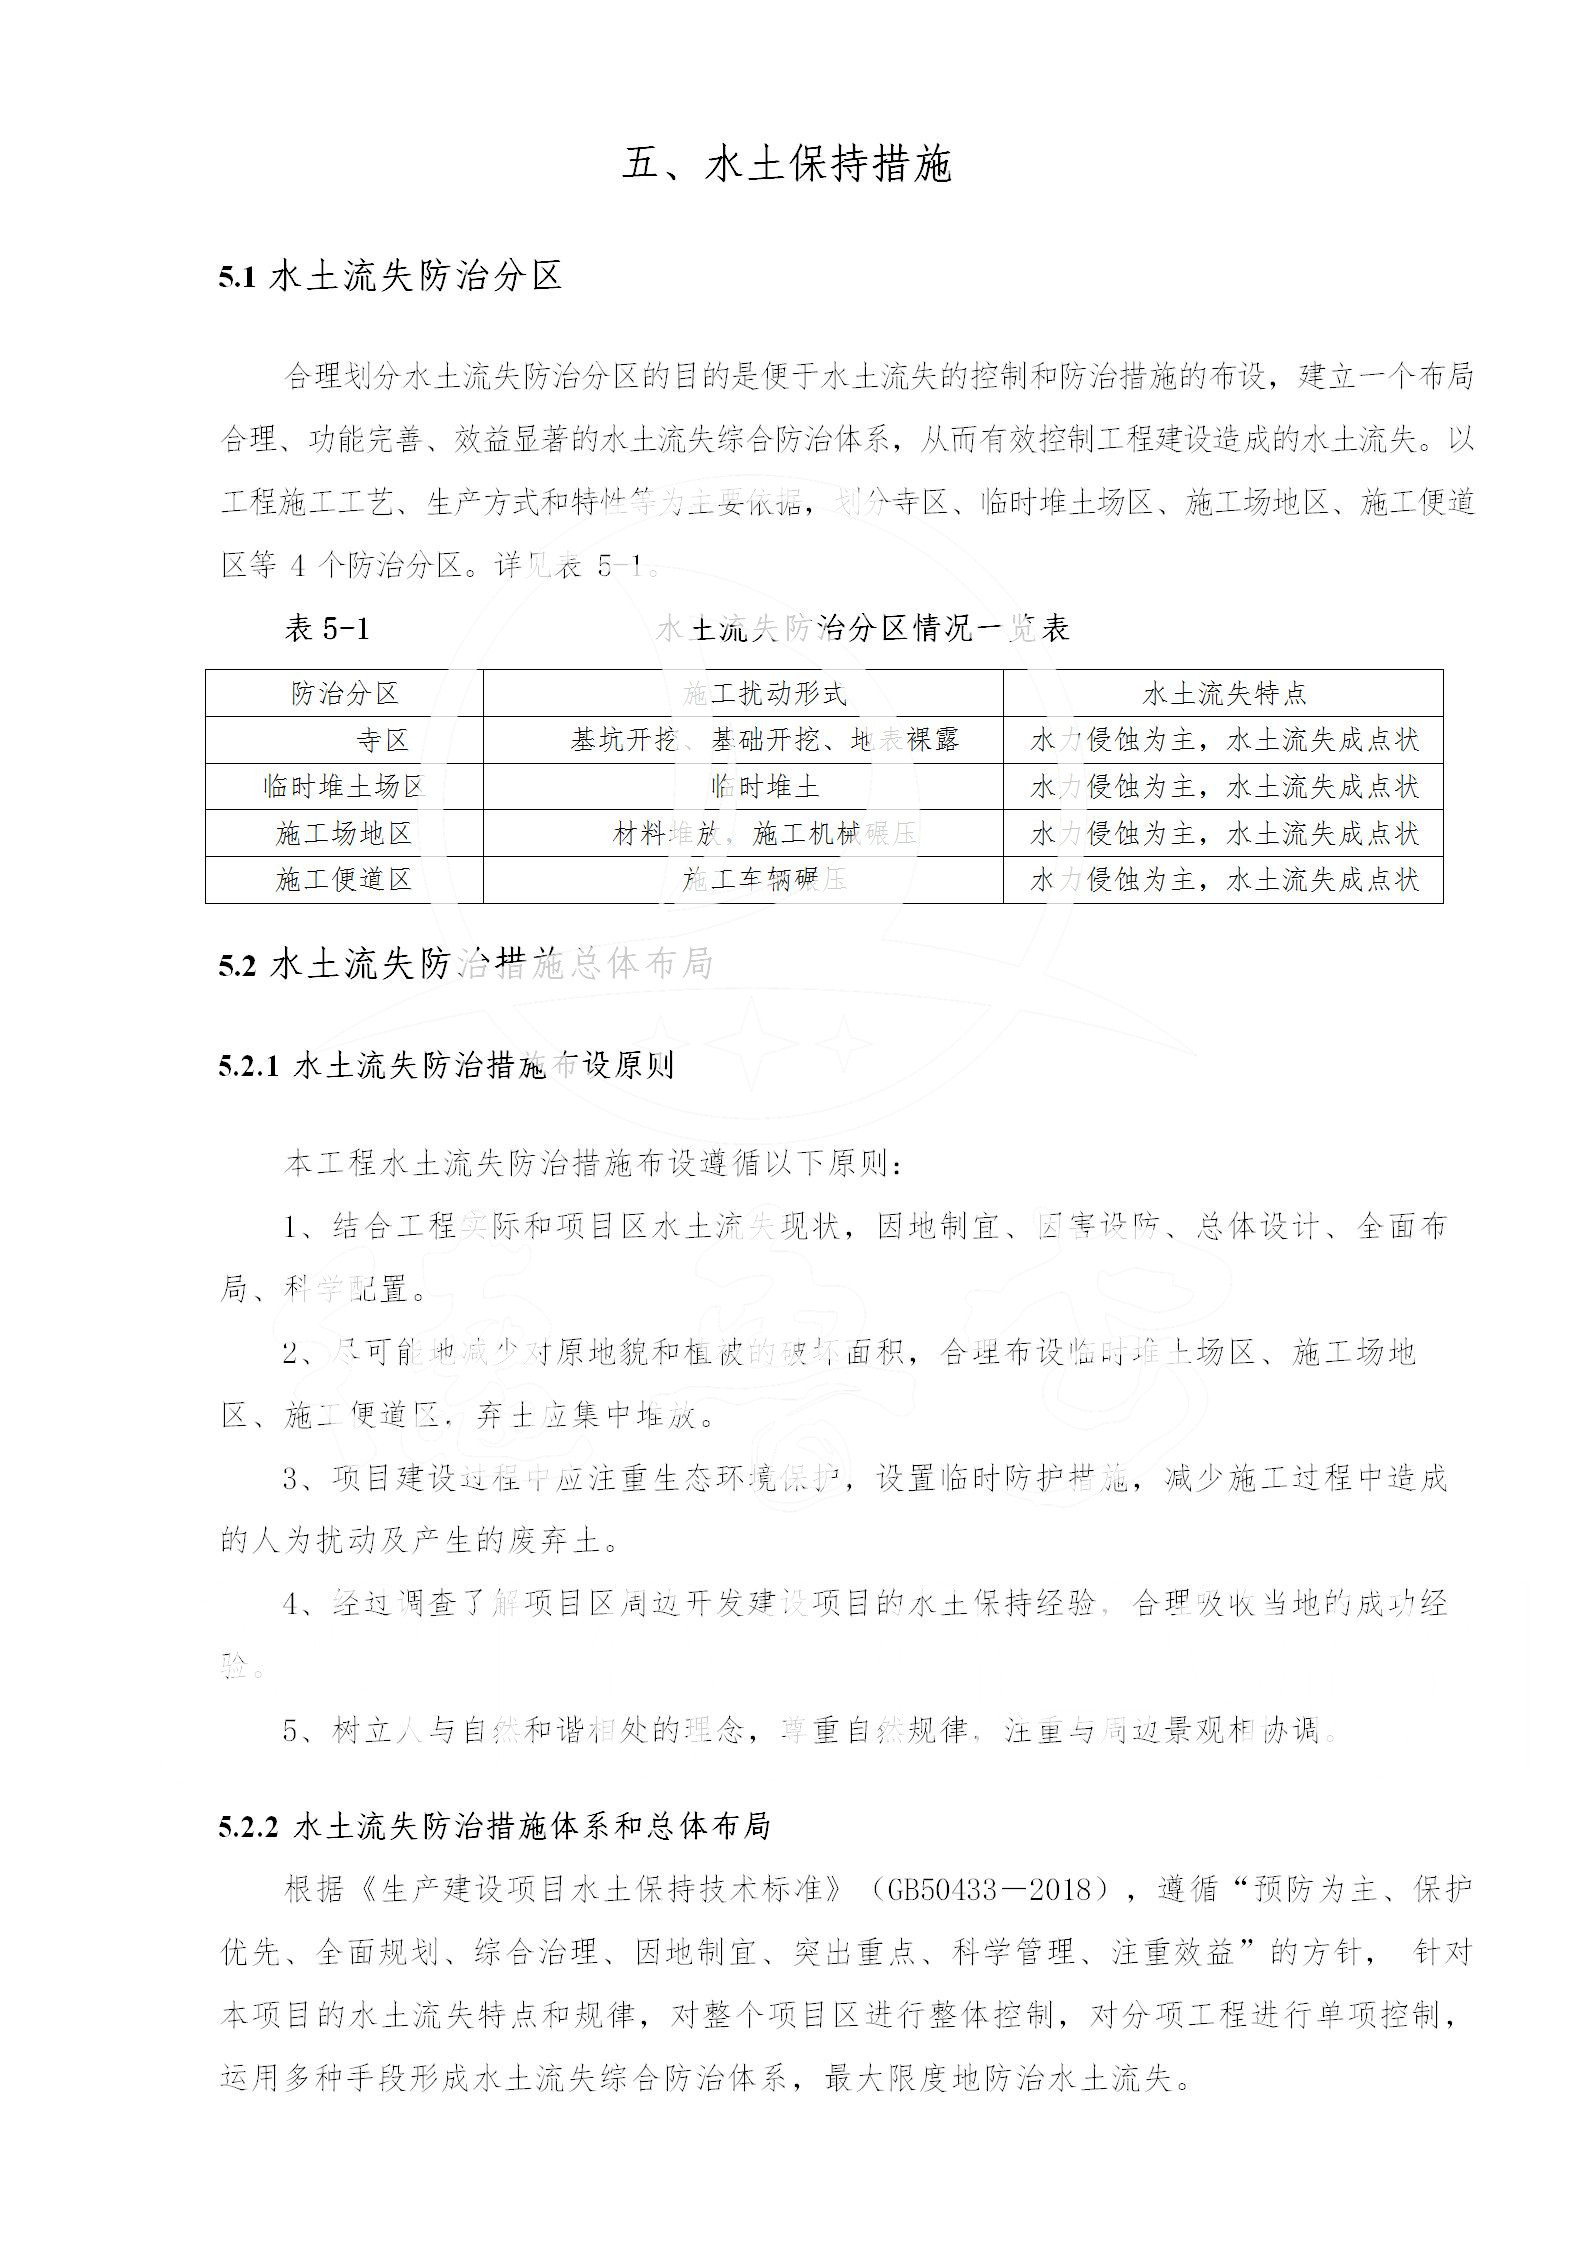 广东省大圣寺水土保持报告  修改稿5_54.jpg